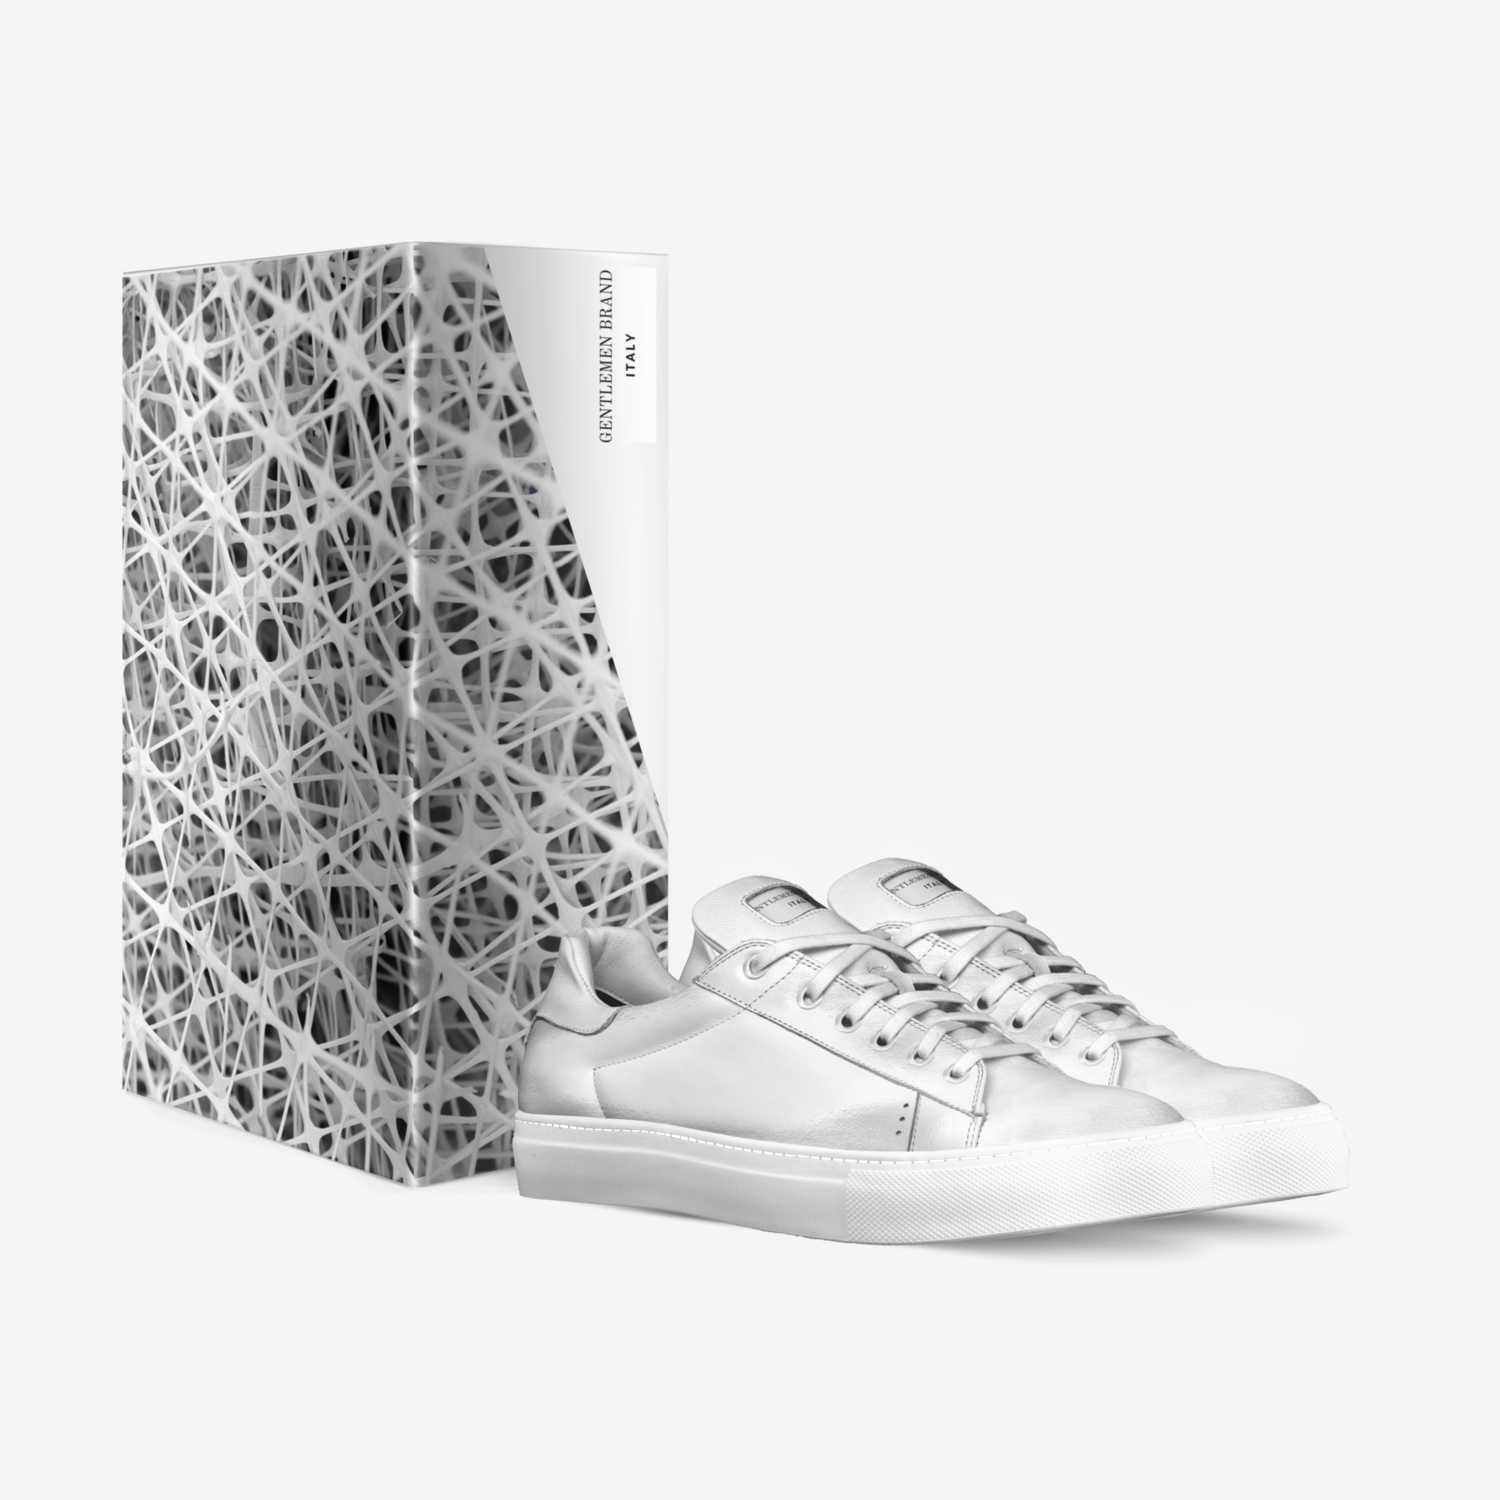 GENTLEMEN BRAND  custom made in Italy shoes by Kareem Rush | Box view